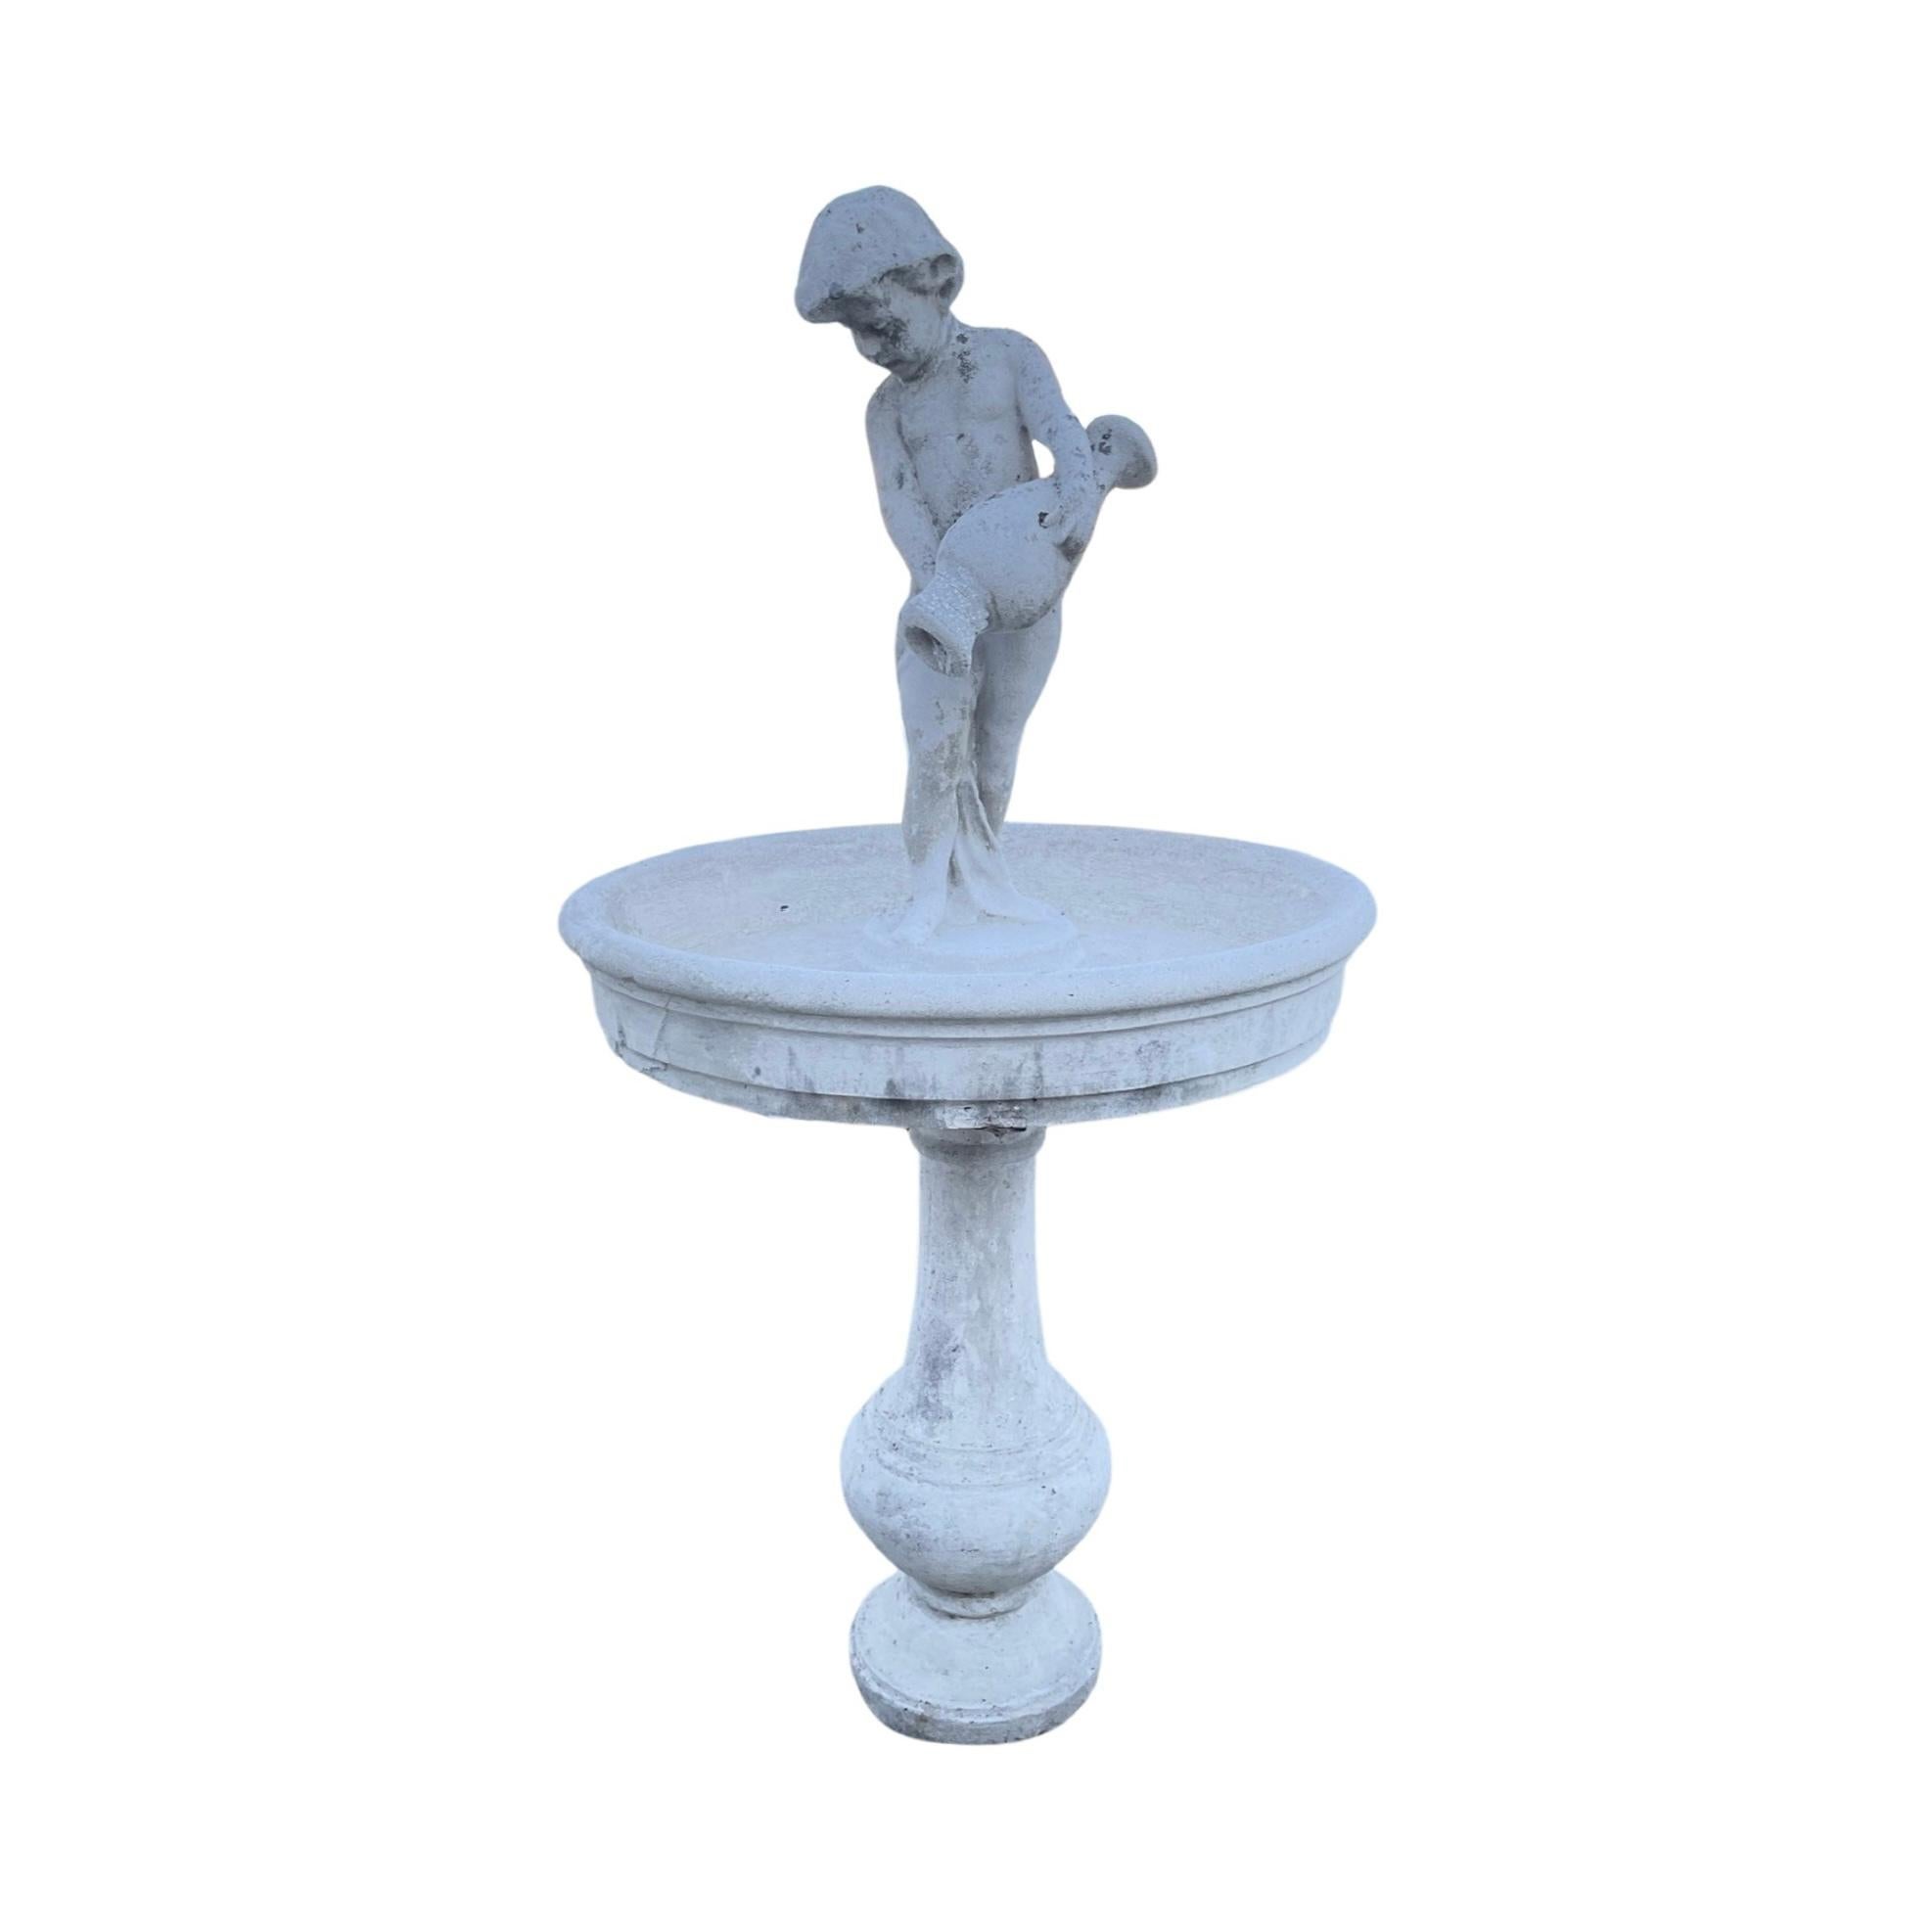 Dieser italienische Zementkomposit-Brunnen aus dem 19. Jahrhundert verfügt über ein zentrales Becken für den Wasserüberlauf und eine geschnitzte Statue in der Mitte, die ein elegantes Herzstück für jeden Garten bildet. Seine Zementzusammensetzung